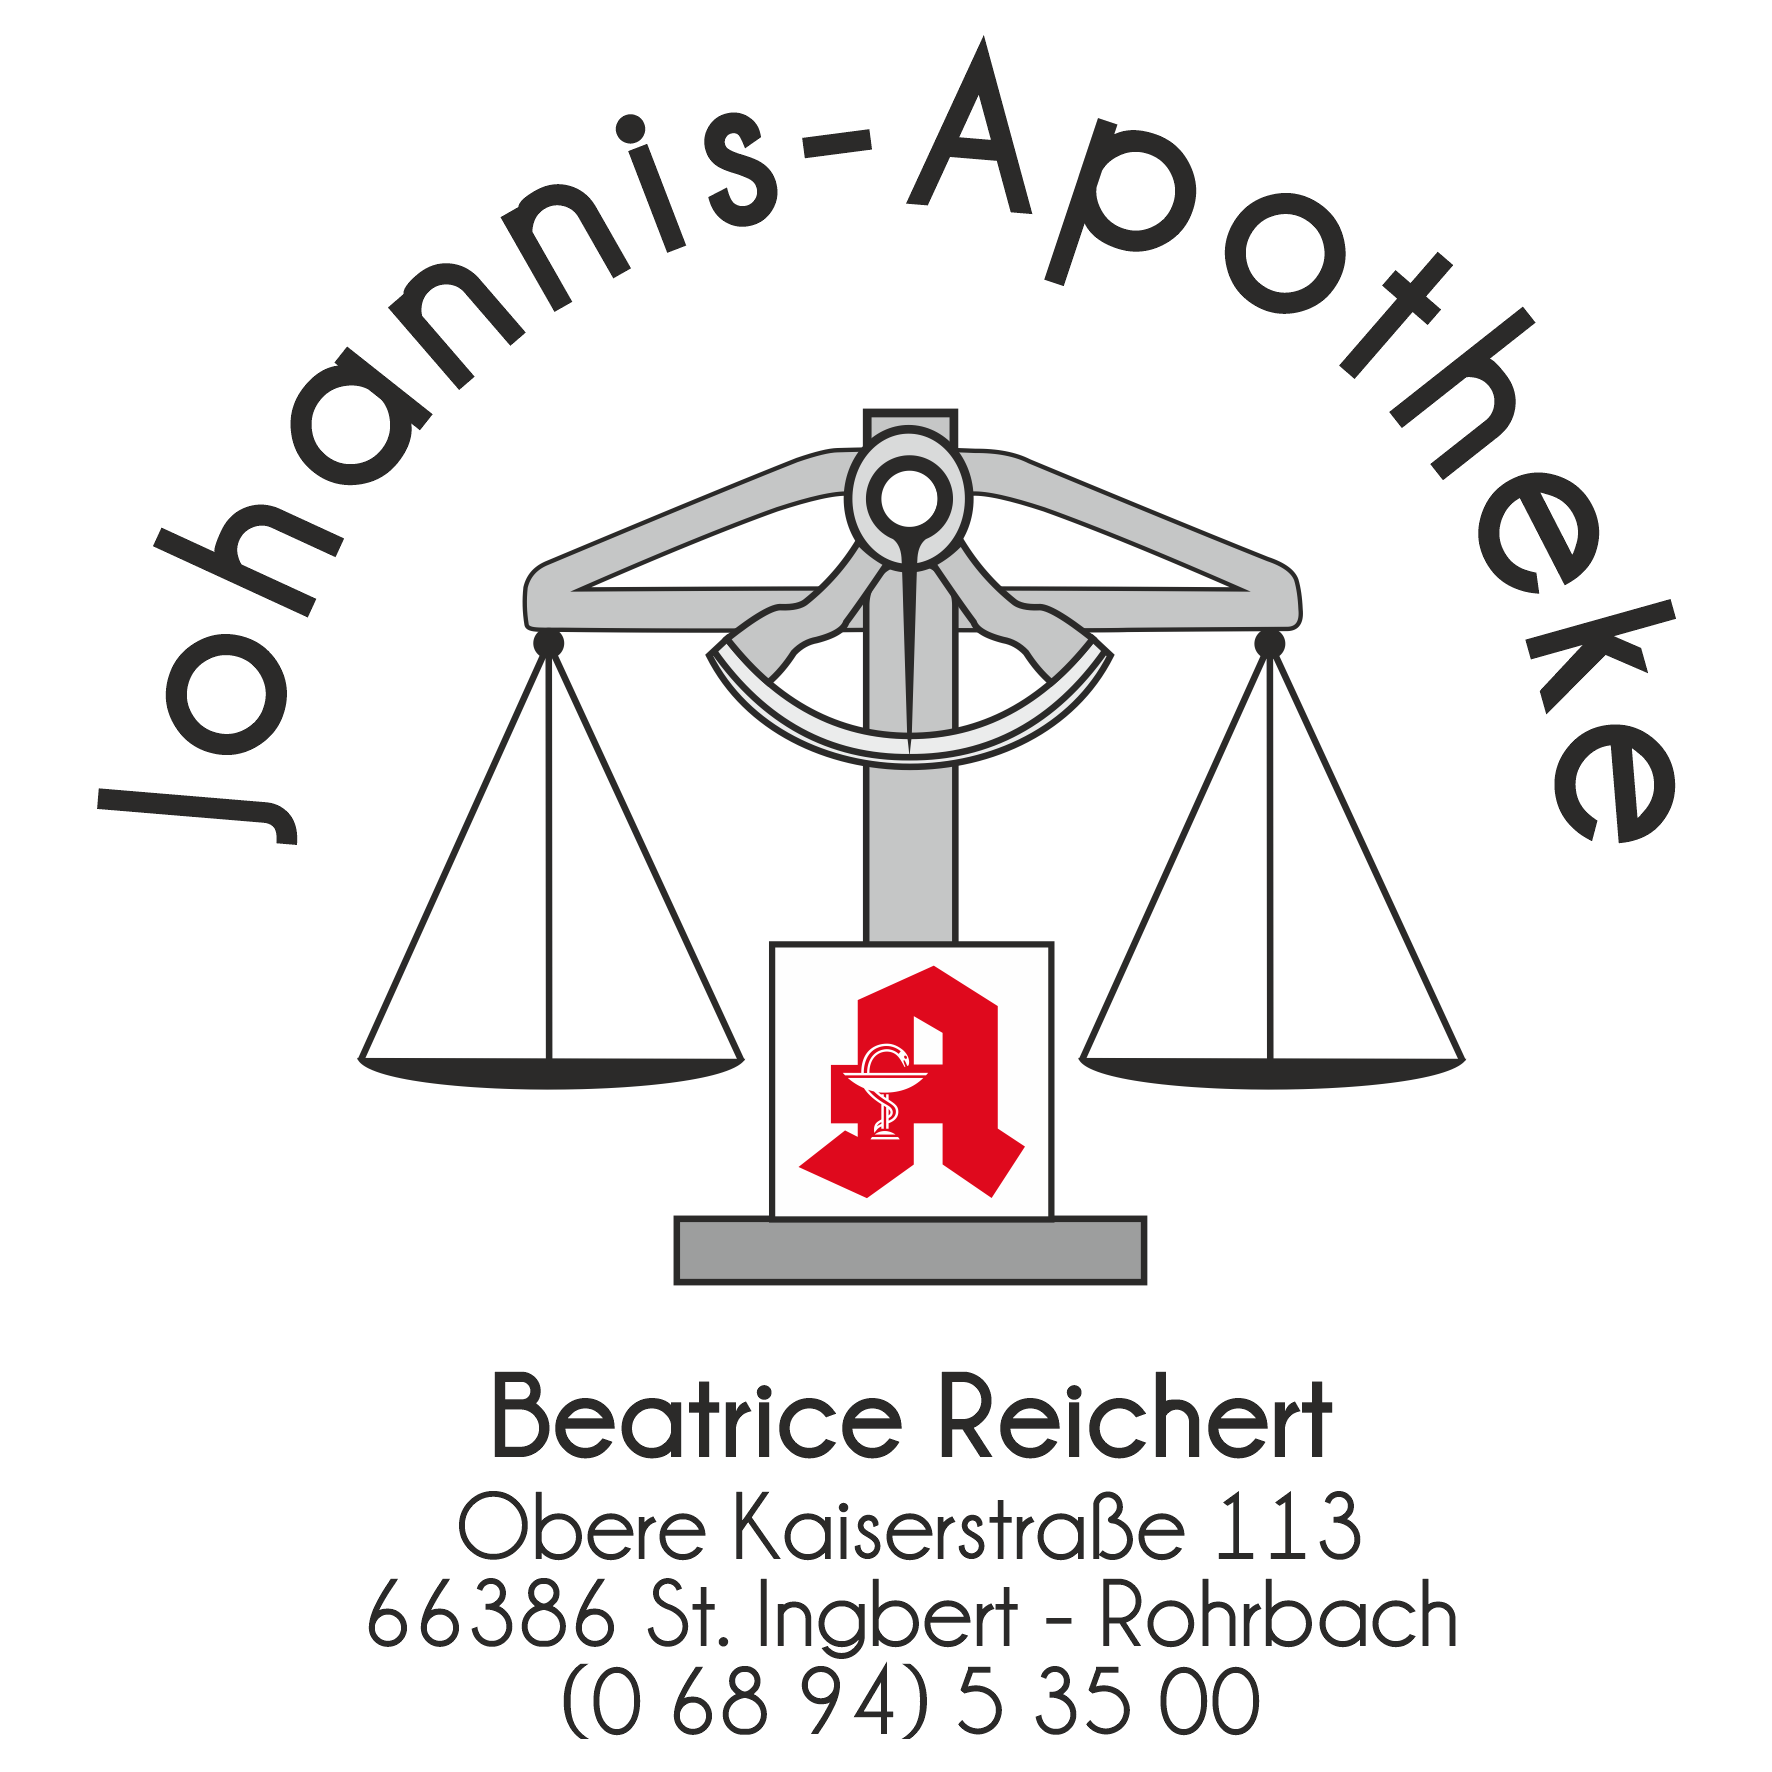 Johannis-Apotheke in Sankt Ingbert - Logo